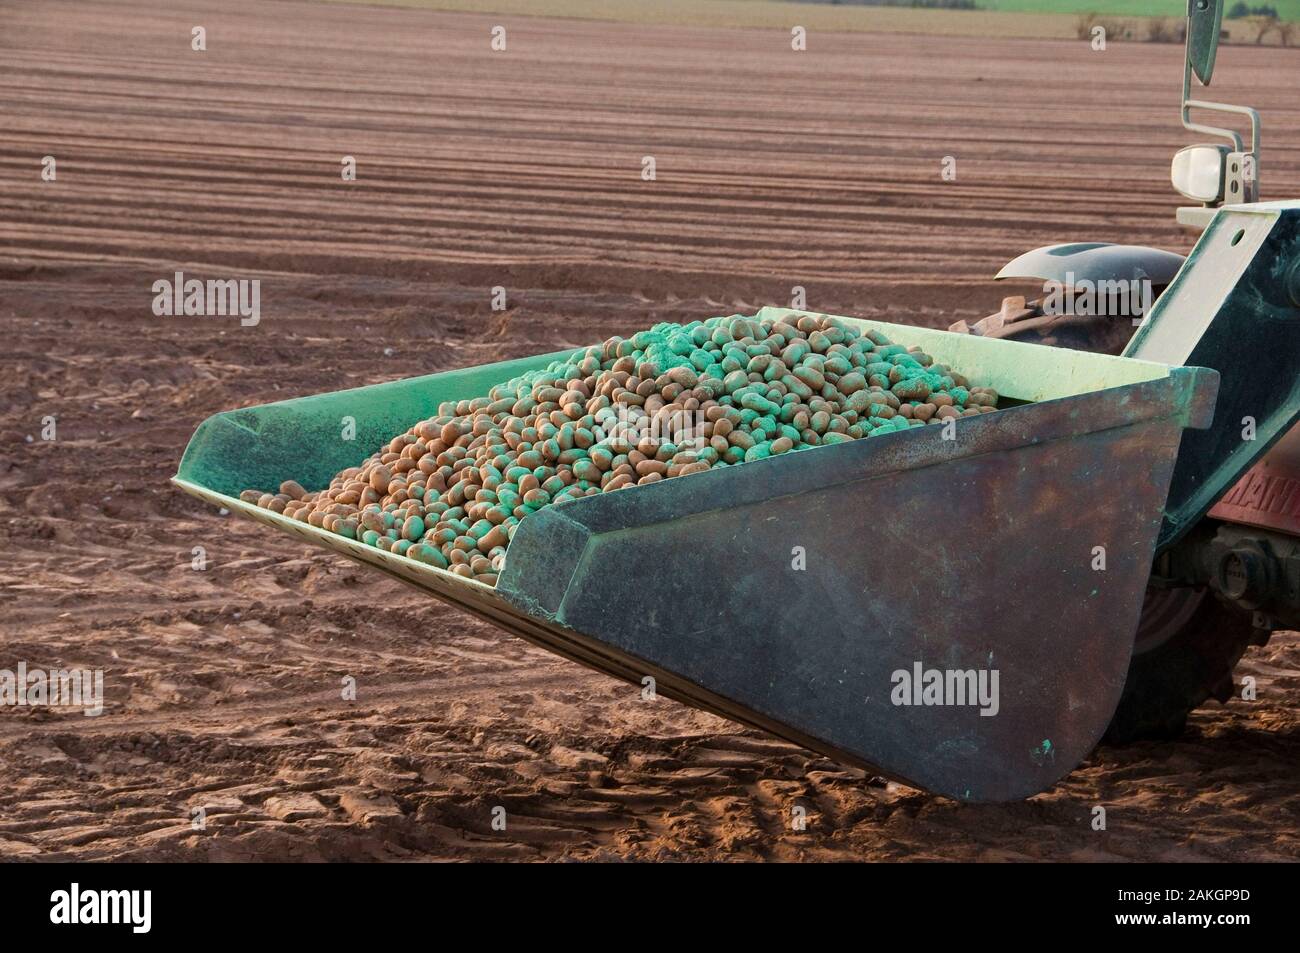 France, Somme, Vironchaux, plantation de pommes de terre dans un champ, les plantes sont arrosées de produits phytosanitaires qui leur donne cette couleur verte Banque D'Images